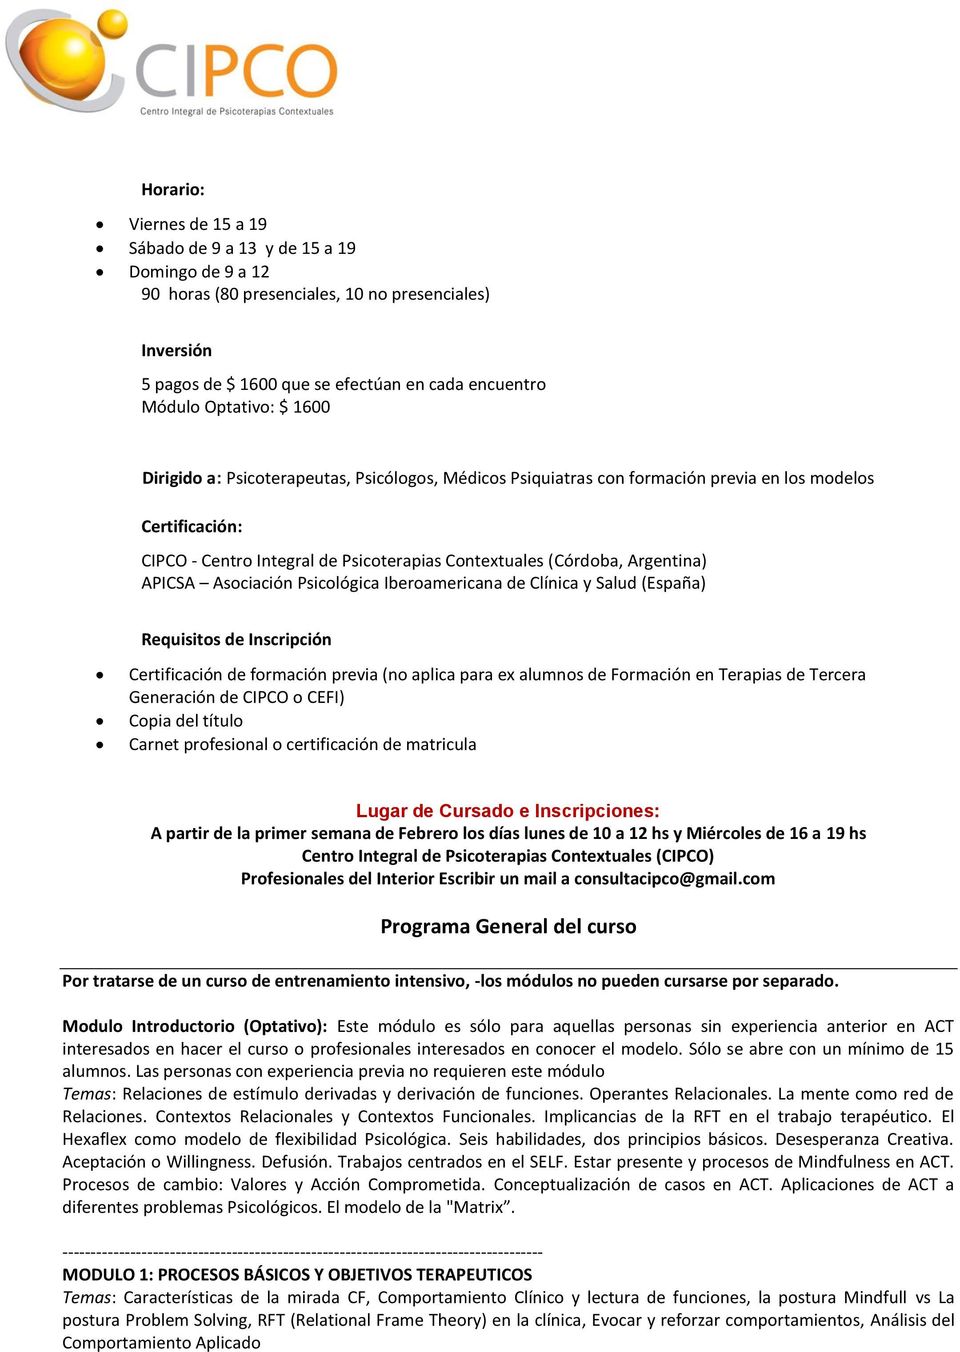 Argentina) APICSA Asociación Psicológica Iberoamericana de Clínica y Salud (España) Requisitos de Inscripción Certificación de formación previa (no aplica para ex alumnos de Formación en Terapias de